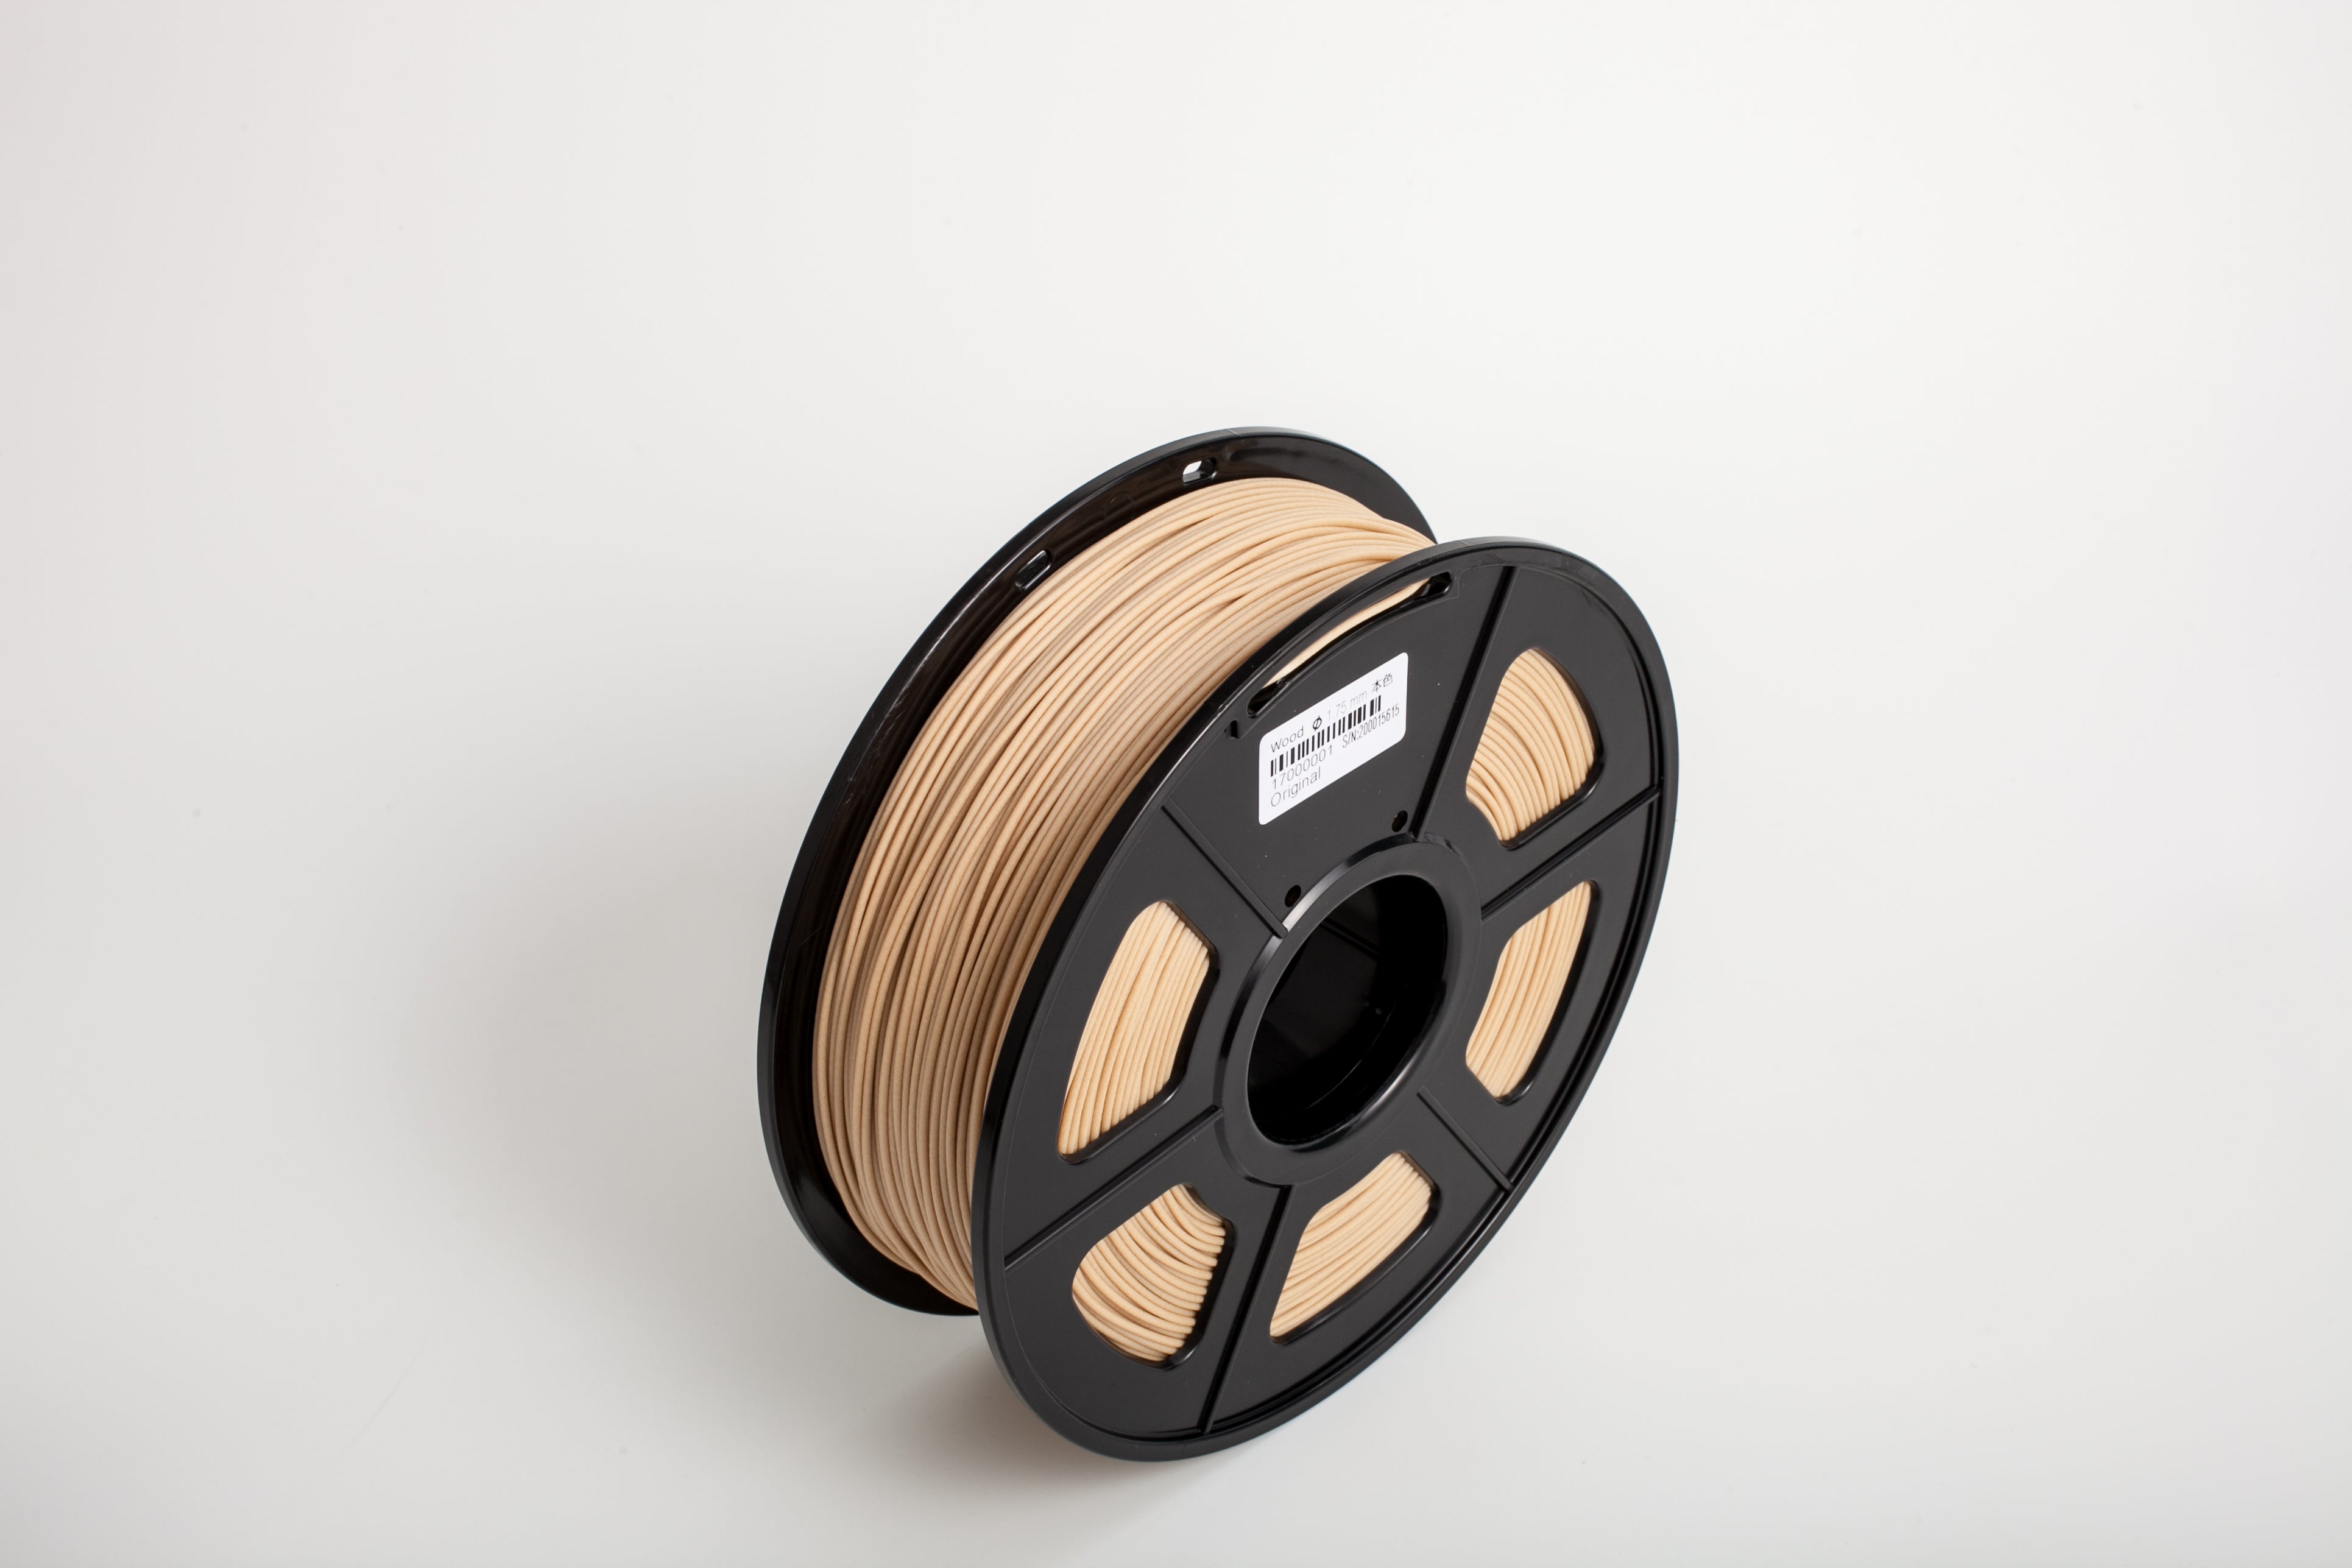  Creality Wood Filament PLA, 3D Printer Filament 1.75